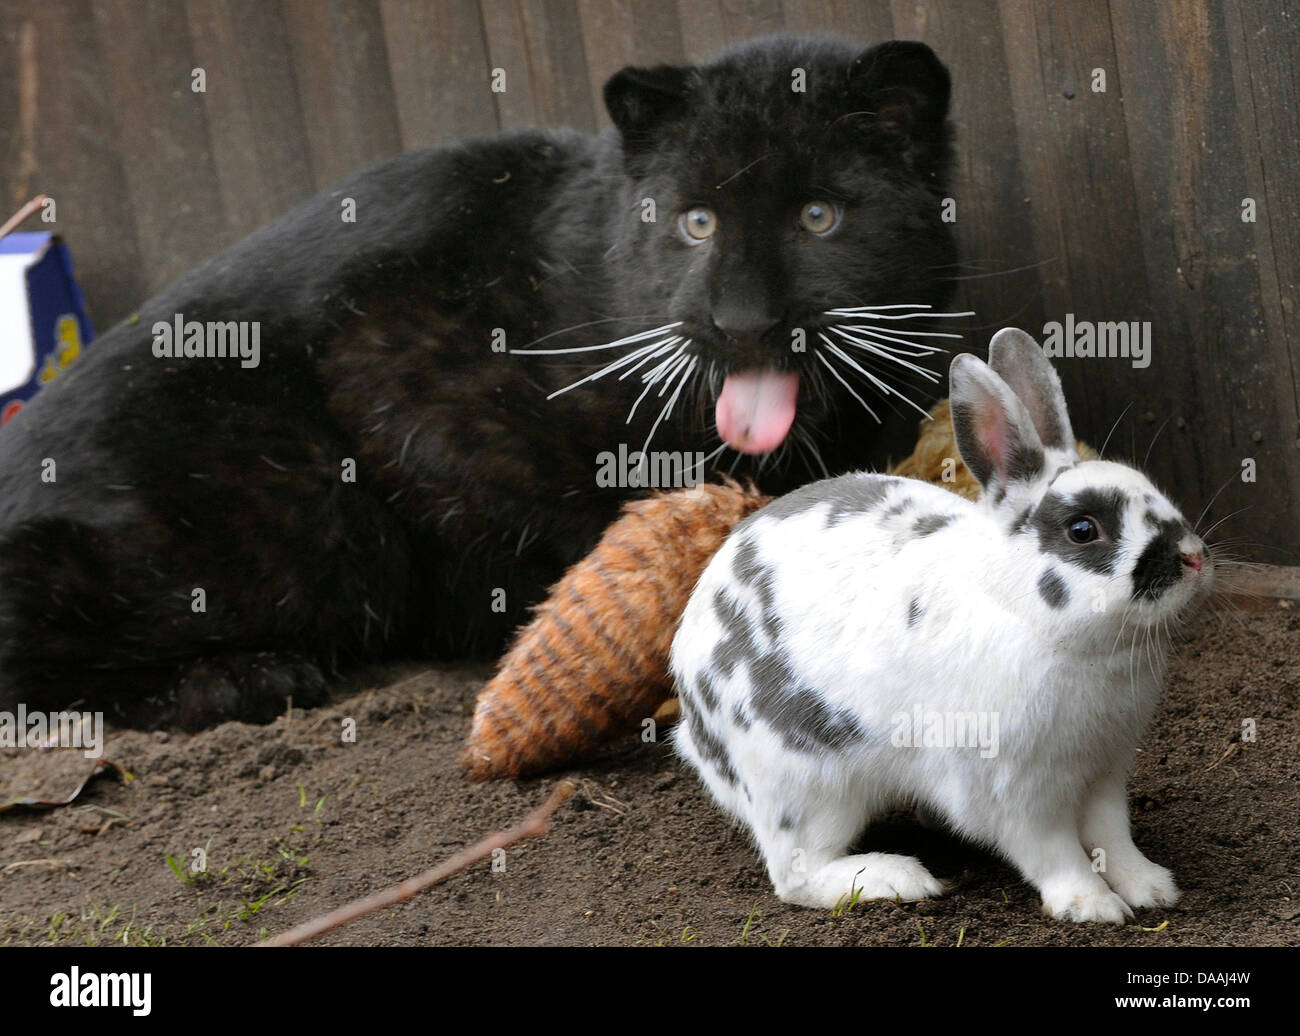 Симбиоз между кроликом и черной пантерой 136